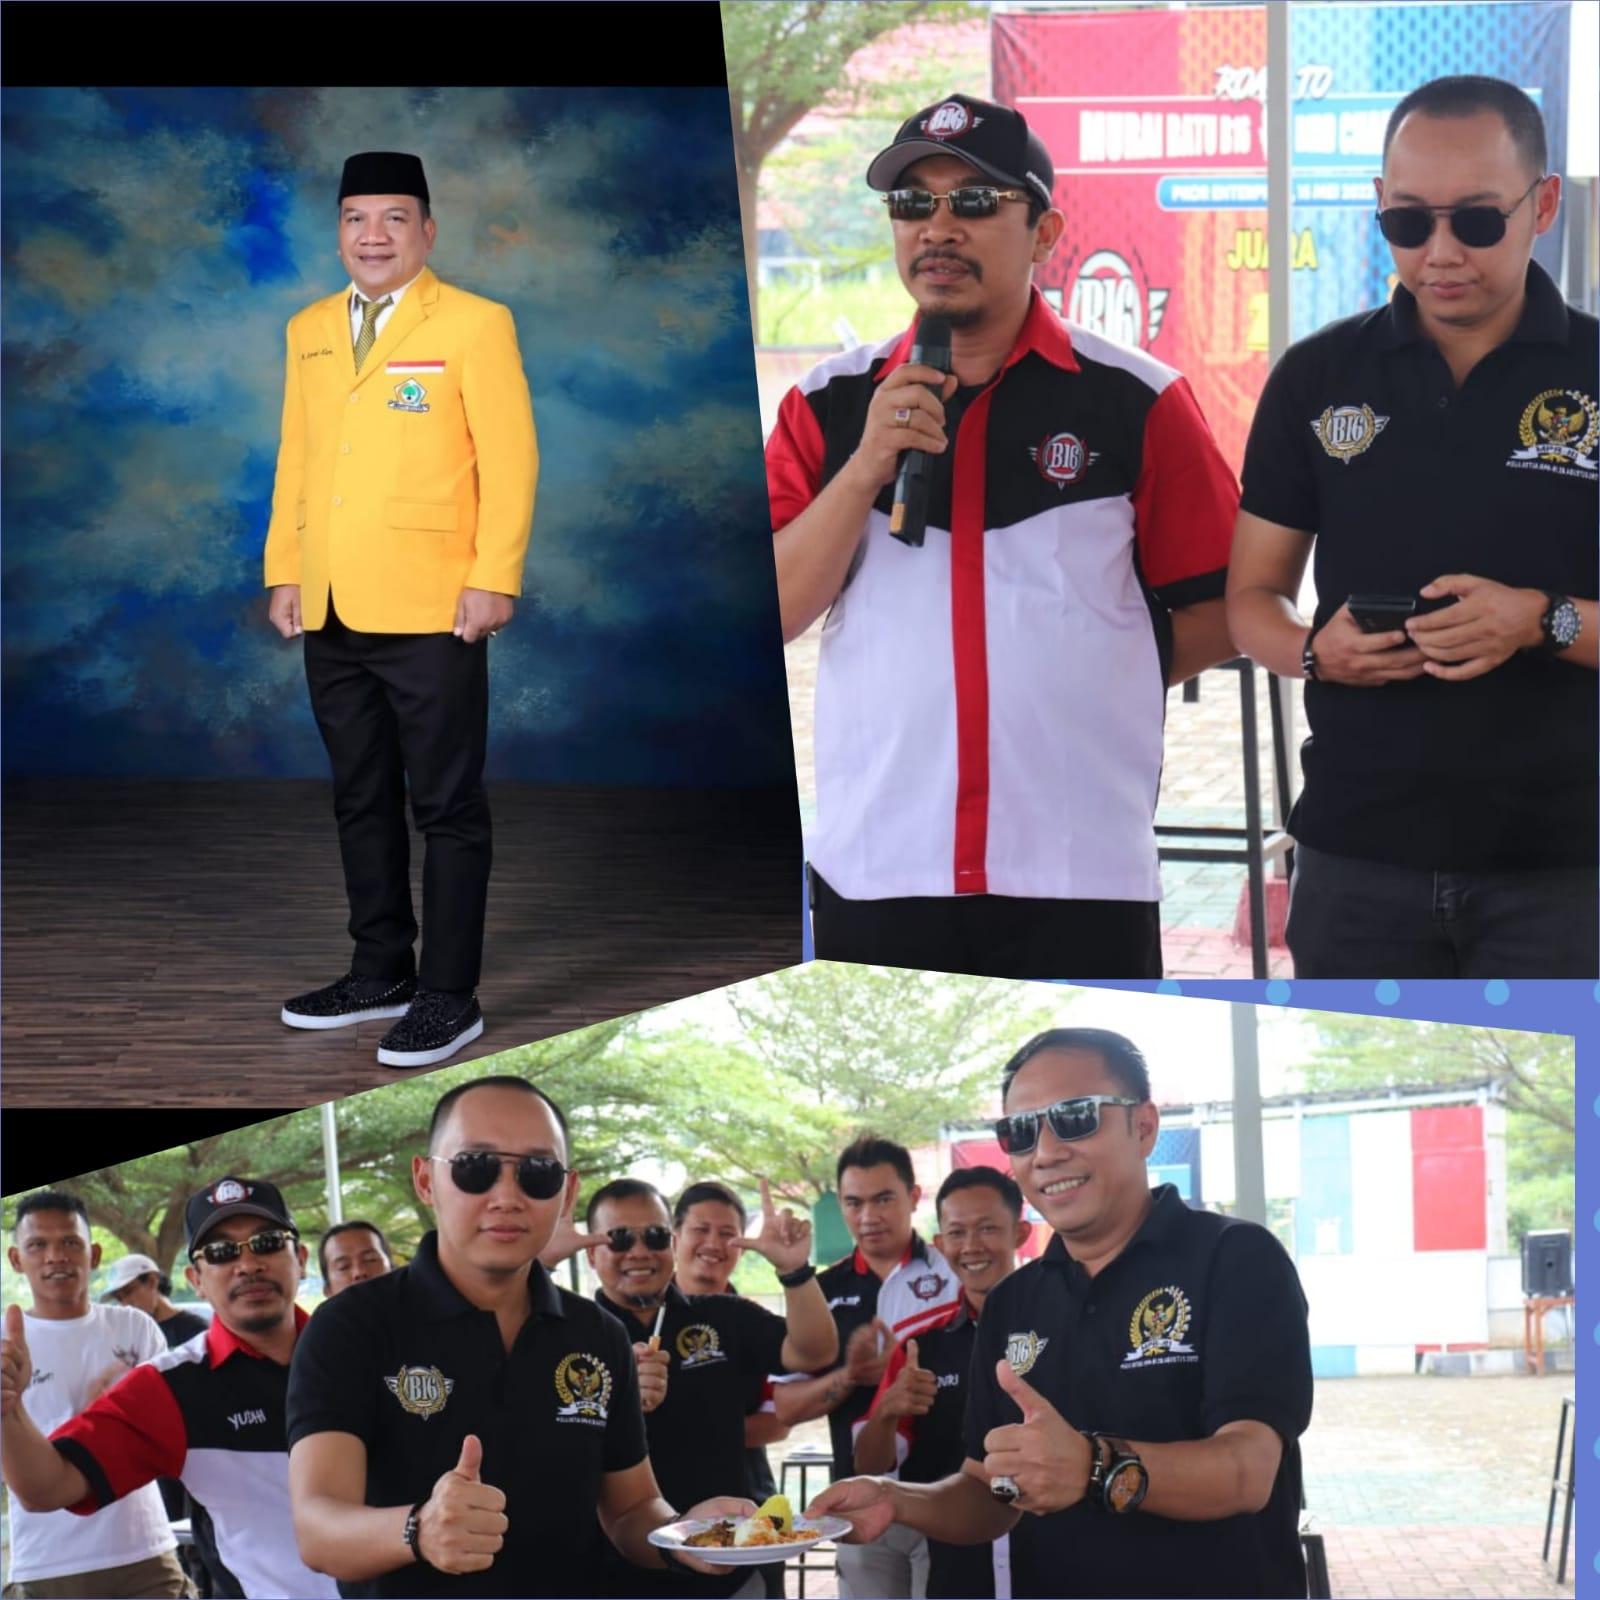 Aprozi Alam Ketua AMPG Lampung, Dukung Kegiatan Positif Seperti Di Lakukan Oleh Team B16 Lampung